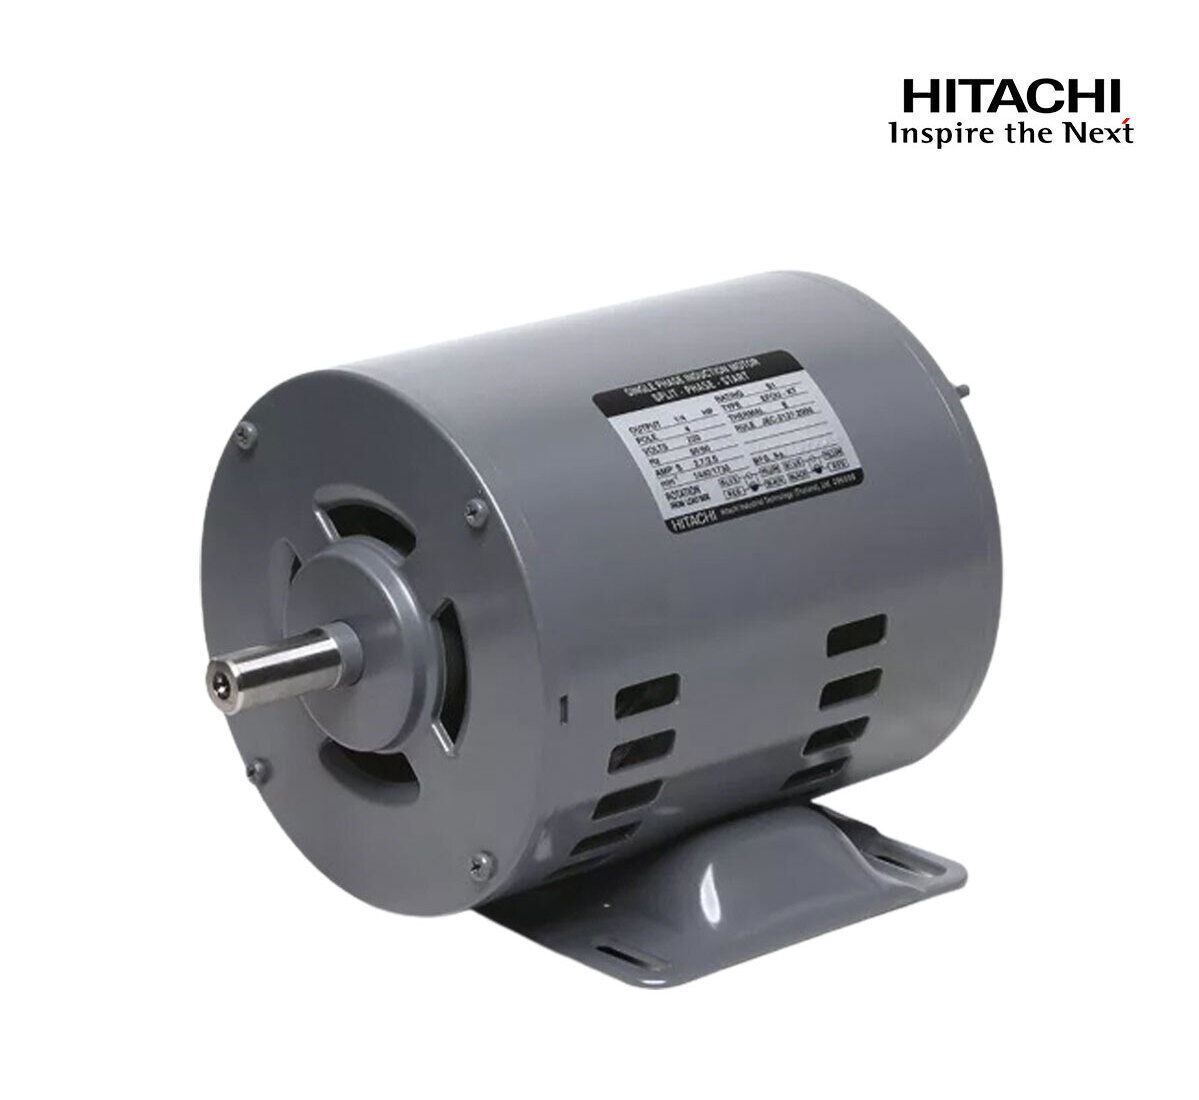 มอเตอร์ฮิตาชิของแท้ 100% HITACHI รุ่น EFOUP-KT กำลัง 1/2 แรงม้า (0.37 KW.) กำลังไฟฟ้าที่ใช้ 220V ความเร็วรอบตัวเปล่า 1450 RPM แกนเพลามอเตอร์ 16 MM.รับประกัน 3 ปี มีของพร้อมจัดส่งทุกวัน